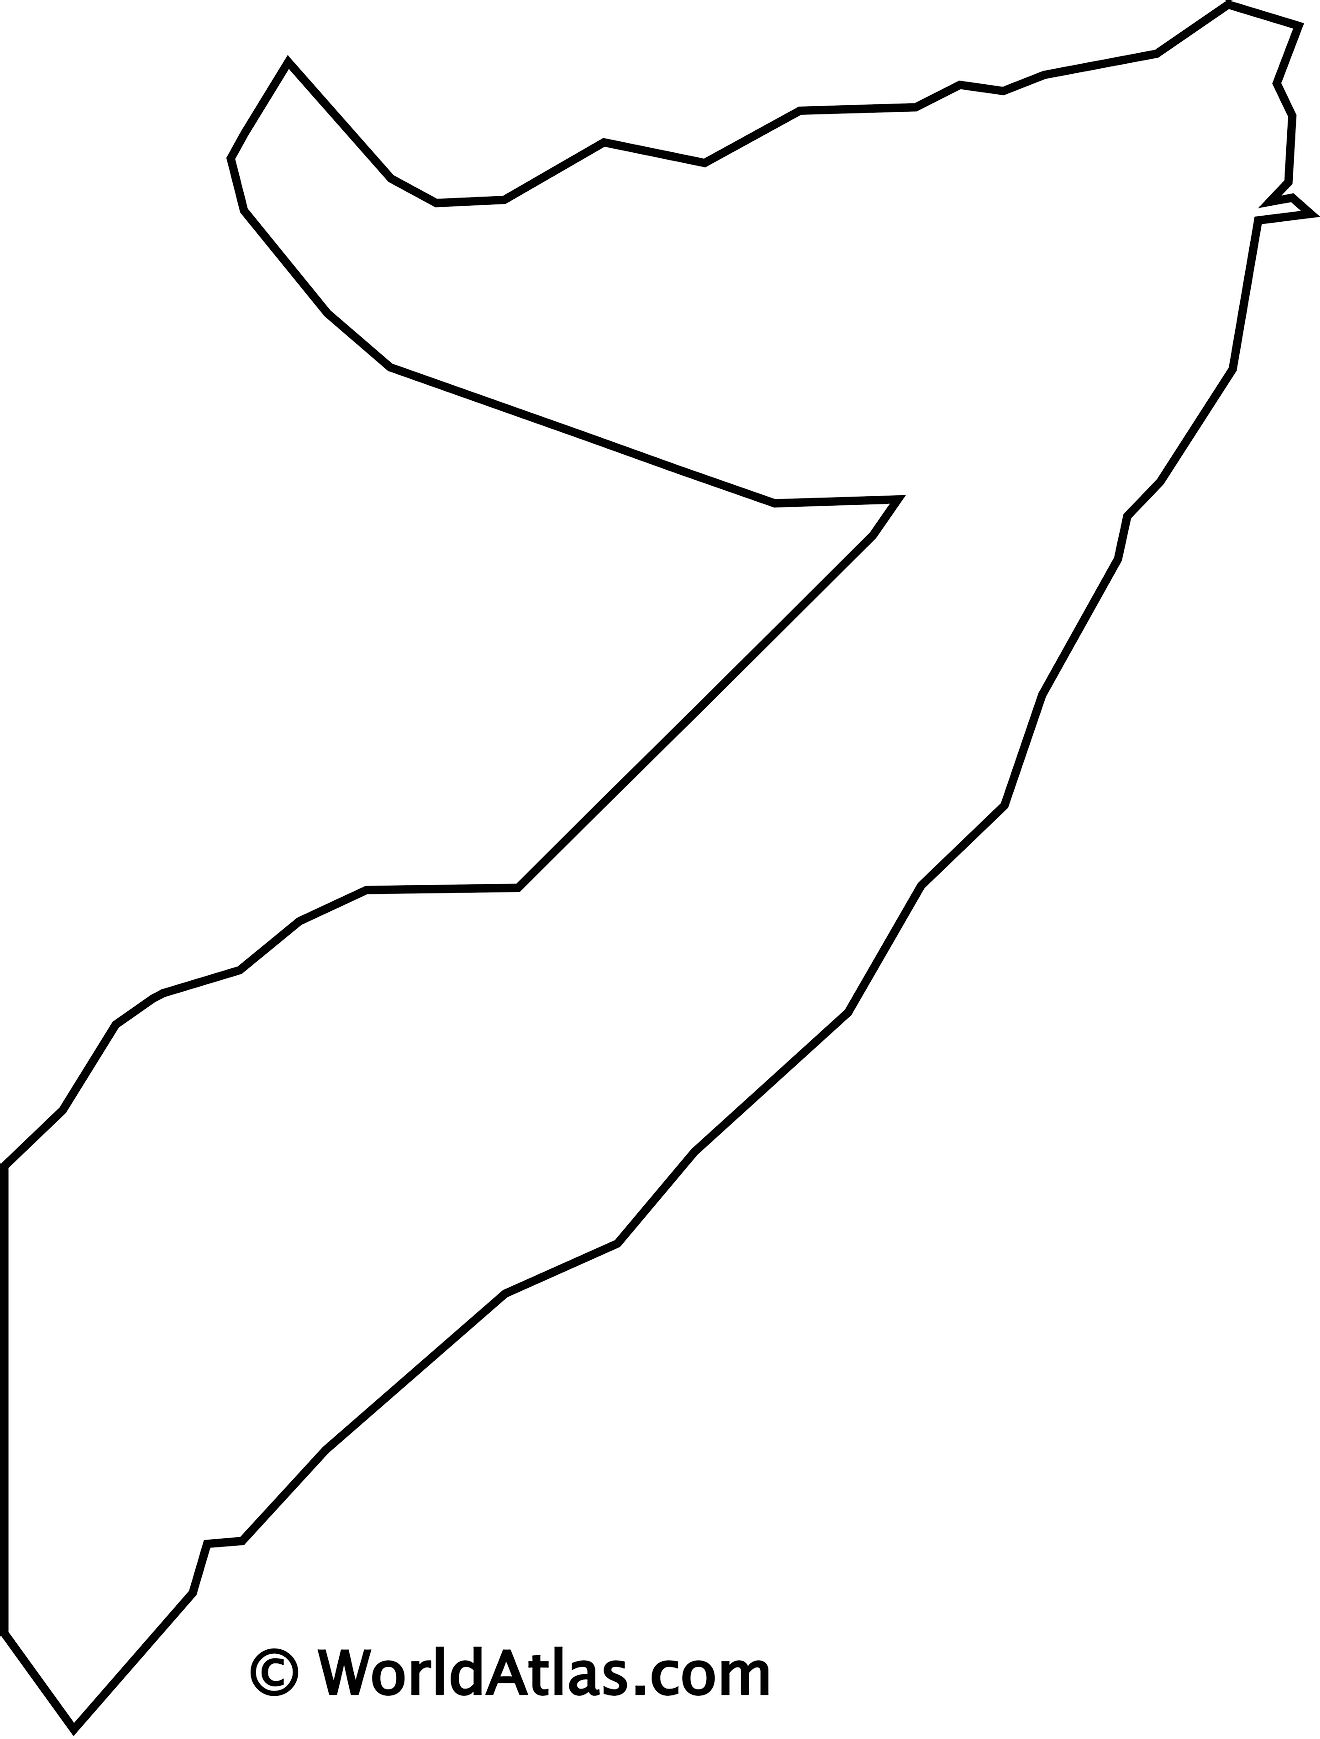 Blank Outline Map of Somalia